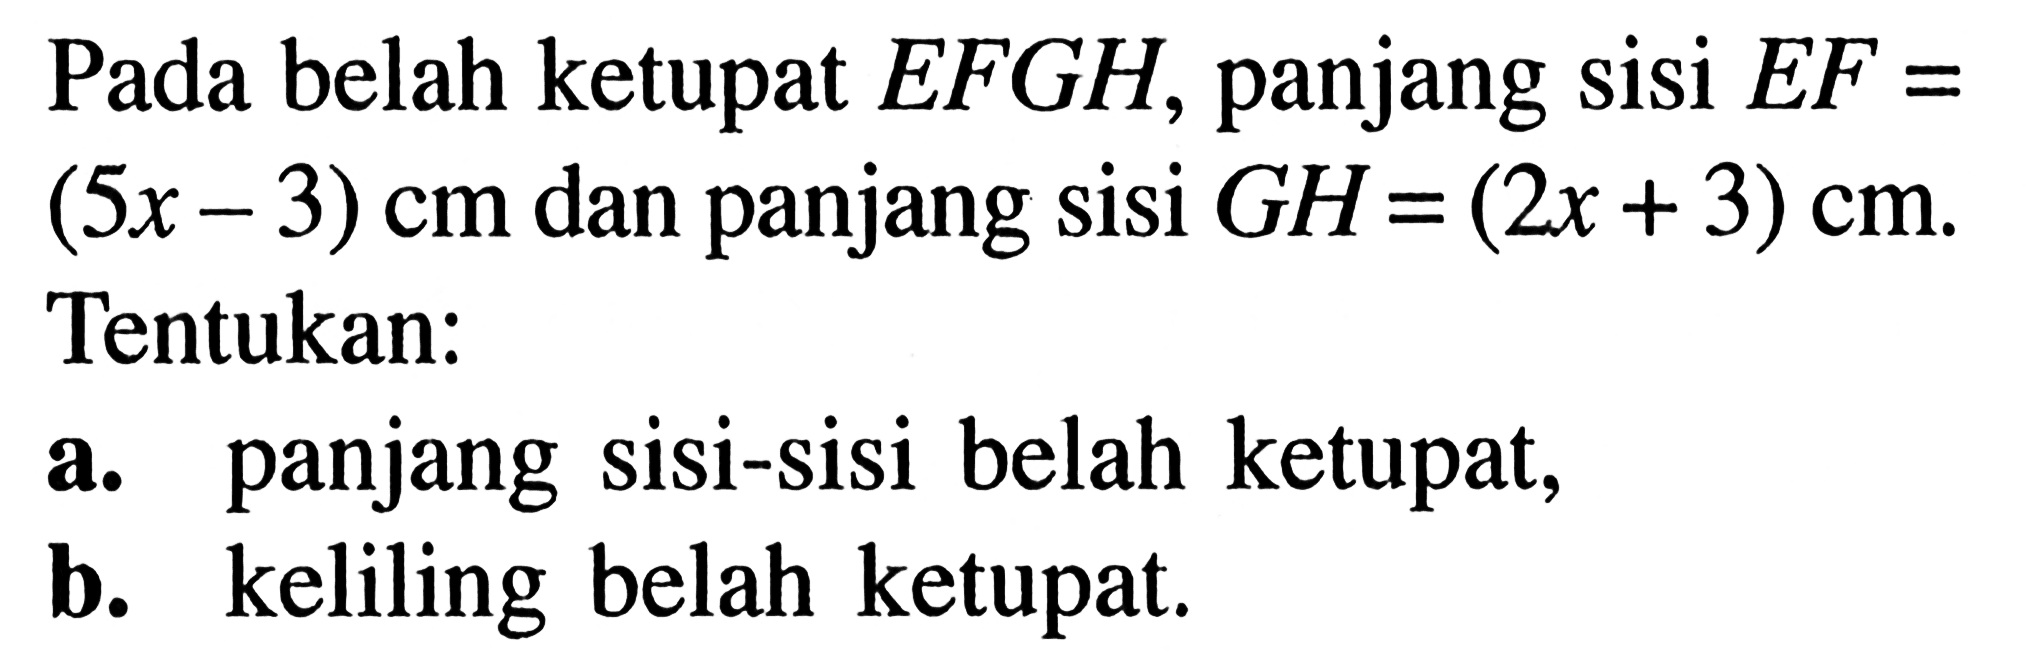 Pada belah ketupat  EFGH, panjang sisi  EF=(5x-3) cm dan panjang sisi  GH=(2x+3) cm. Tentukan:
a. panjang sisi-sisi belah ketupat,
b. keliling belah ketupat.